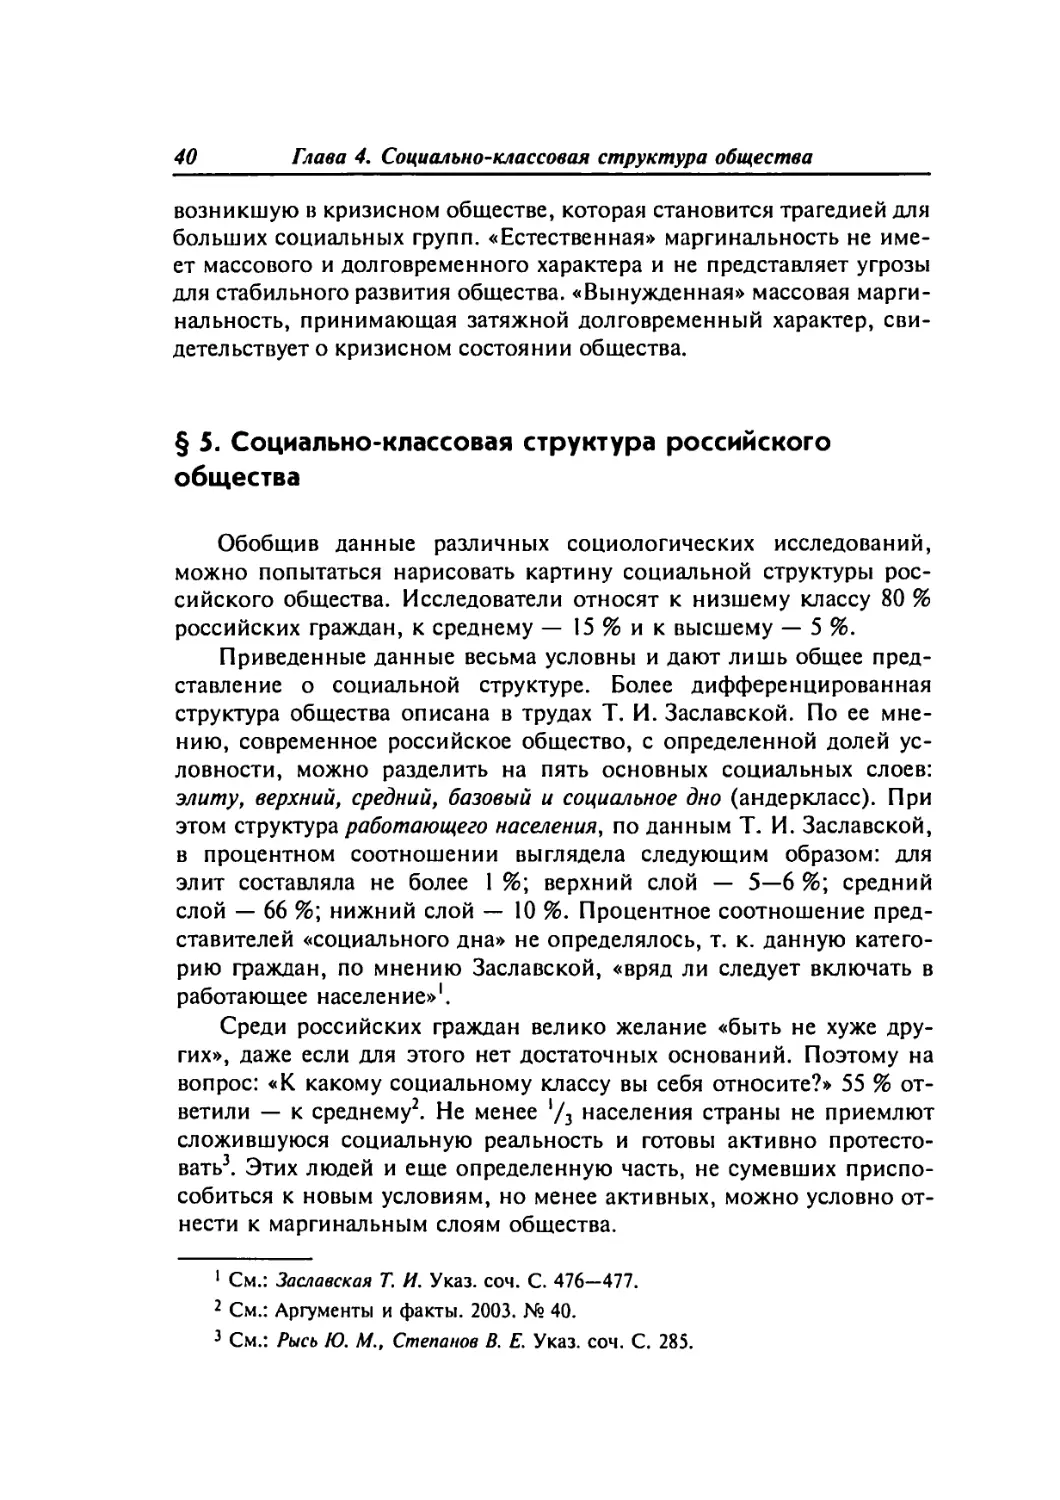 § 5. Социально-классовая структура российского общества